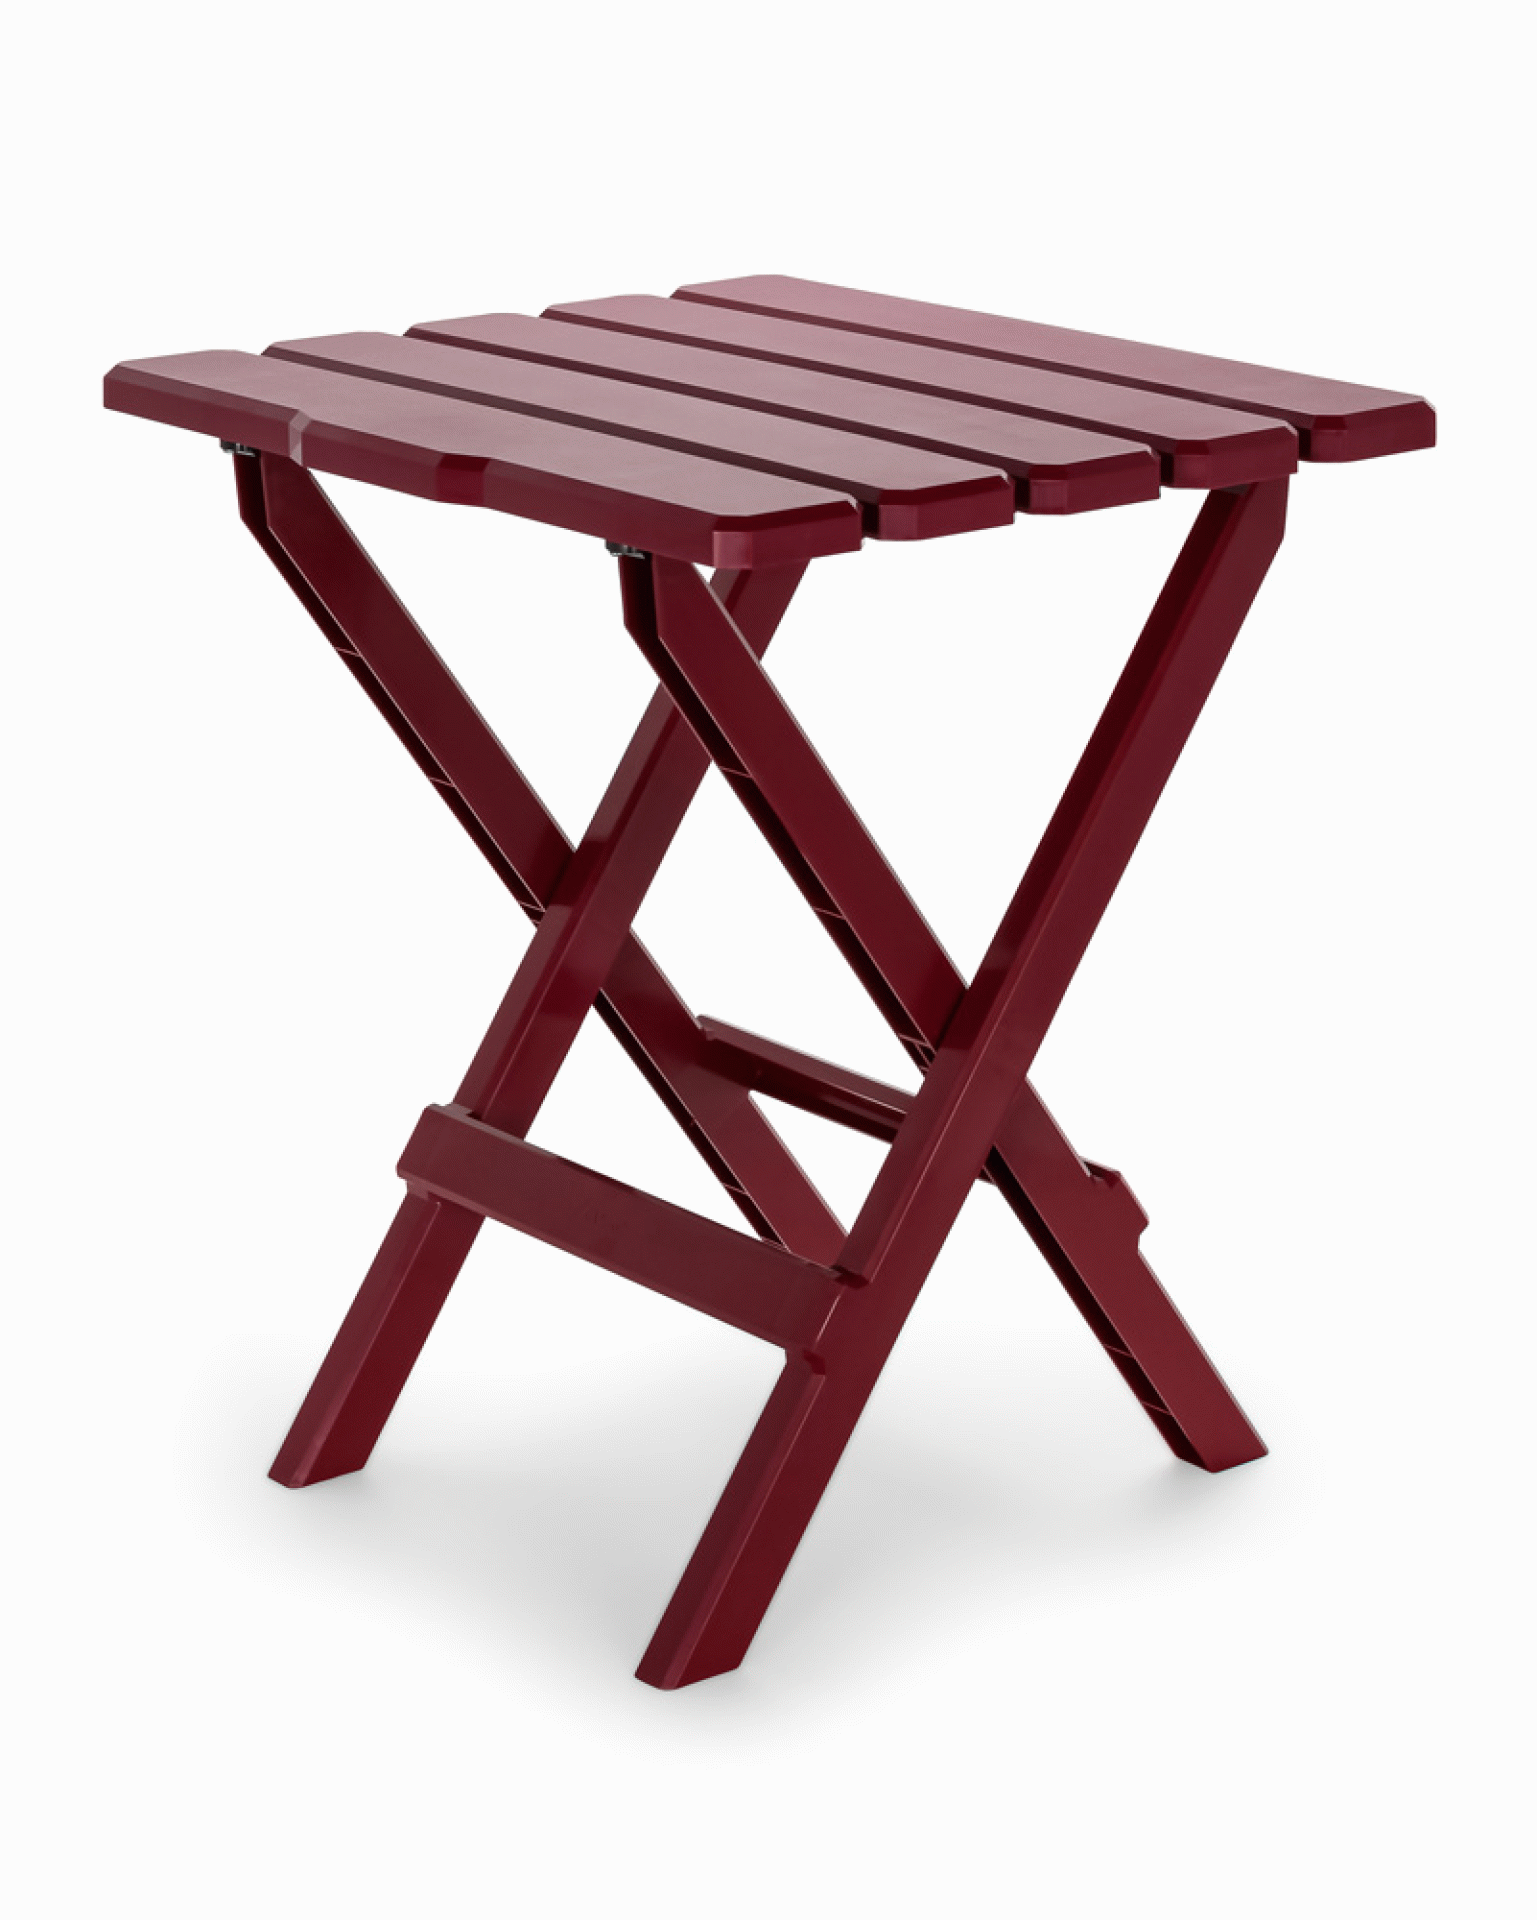 CAMCO MFG INC | 51694 | Large Adirondack Style Folding Table - Red